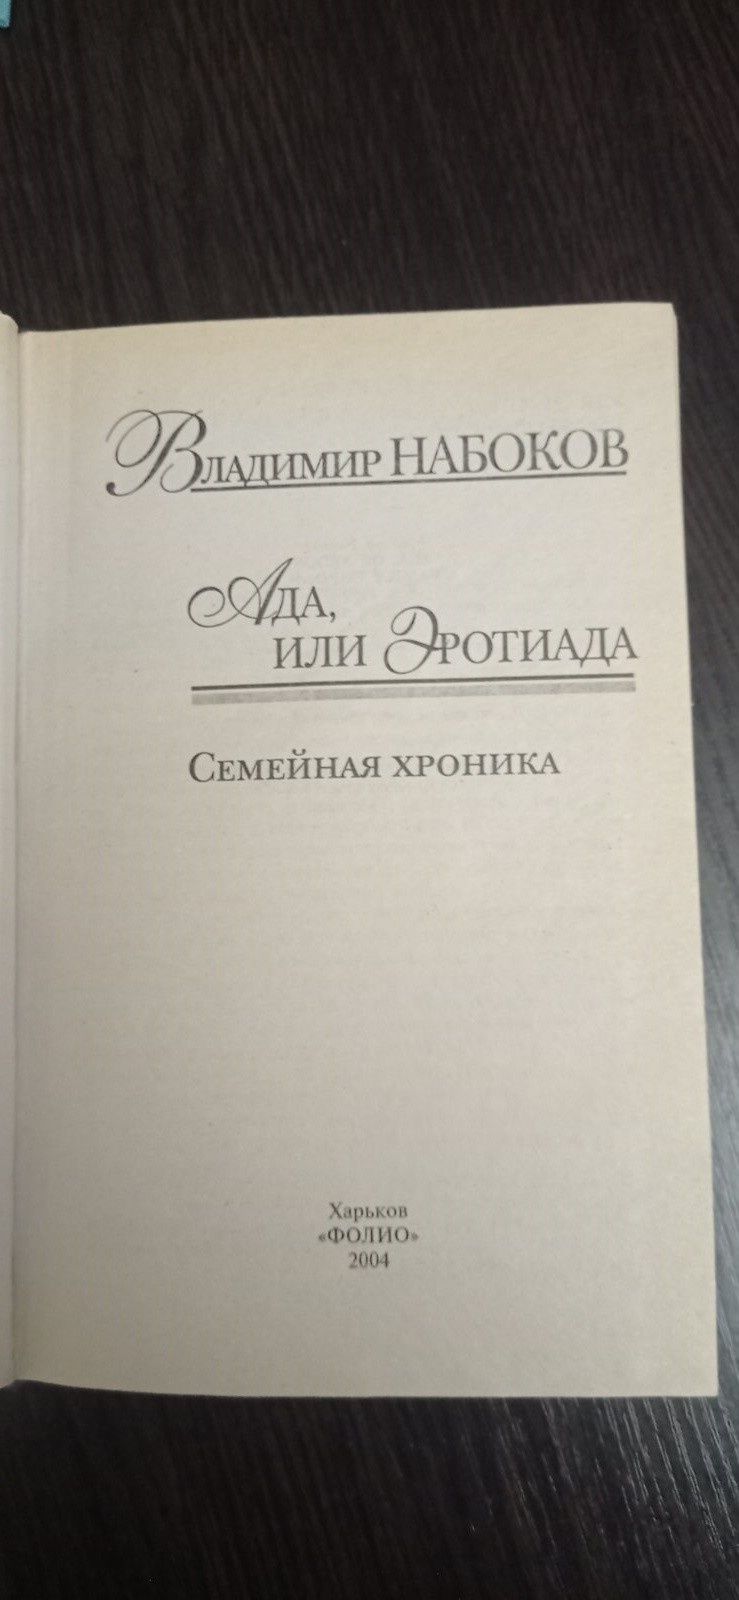 Книга Володимира Набокова "Ада или эротиада"

Книга  в хорошому стані,